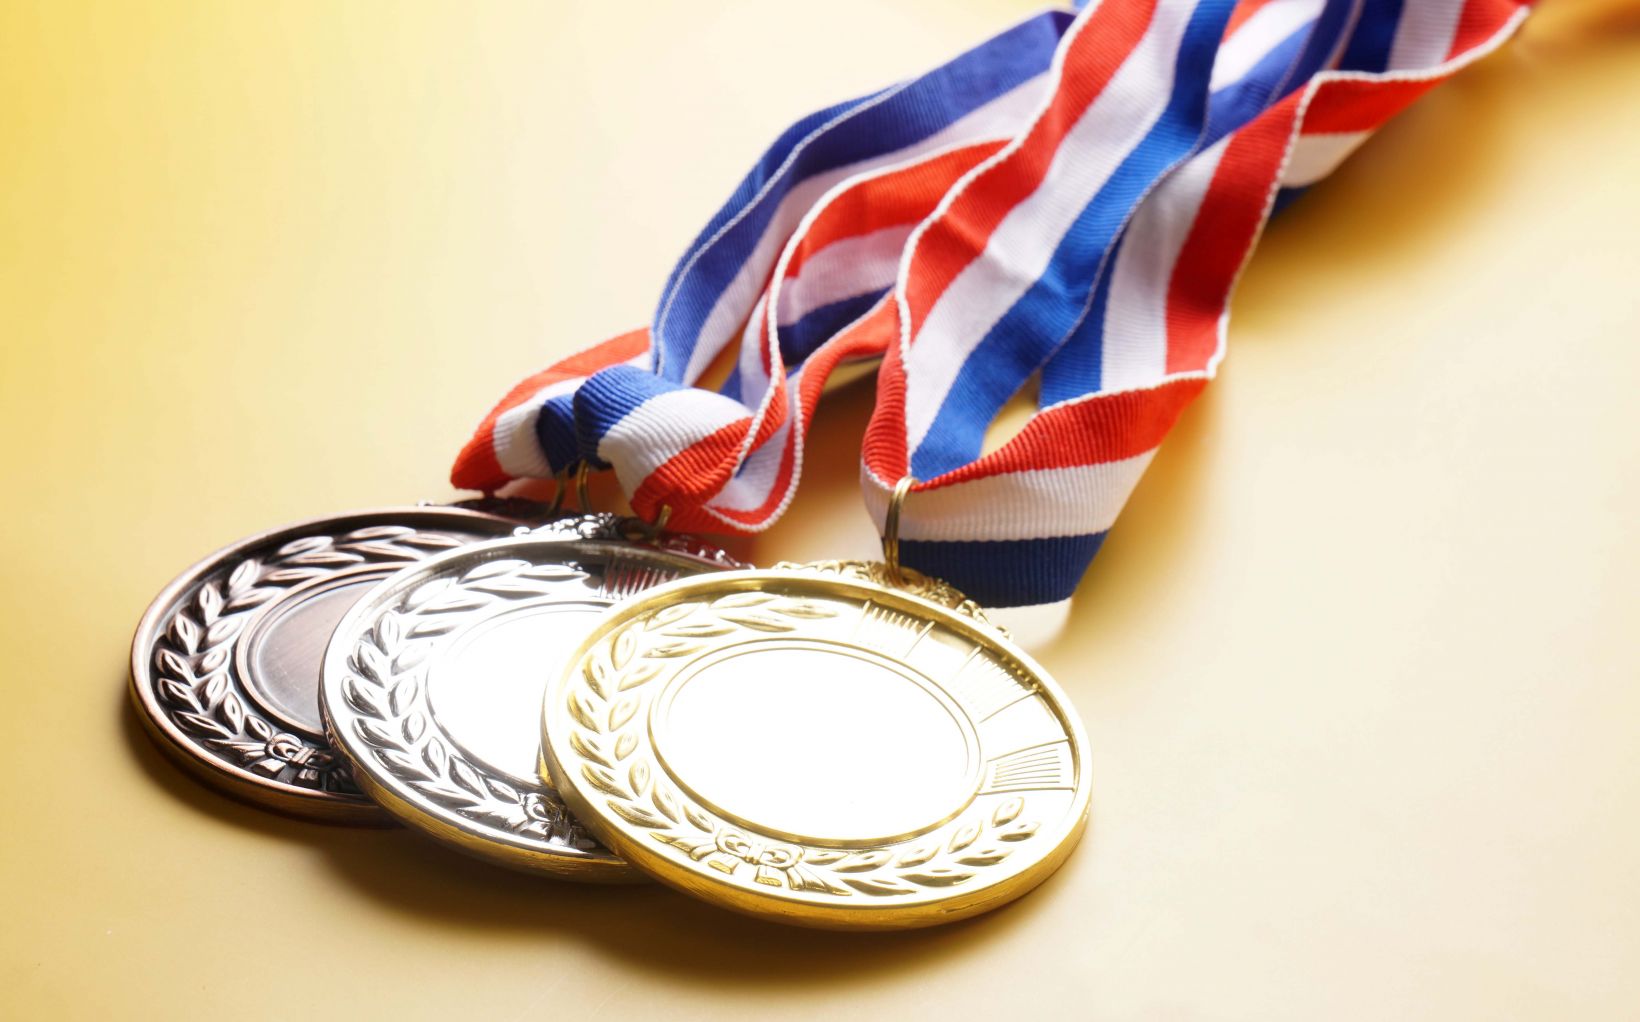 Médailles d’or, d’argent et de bronze